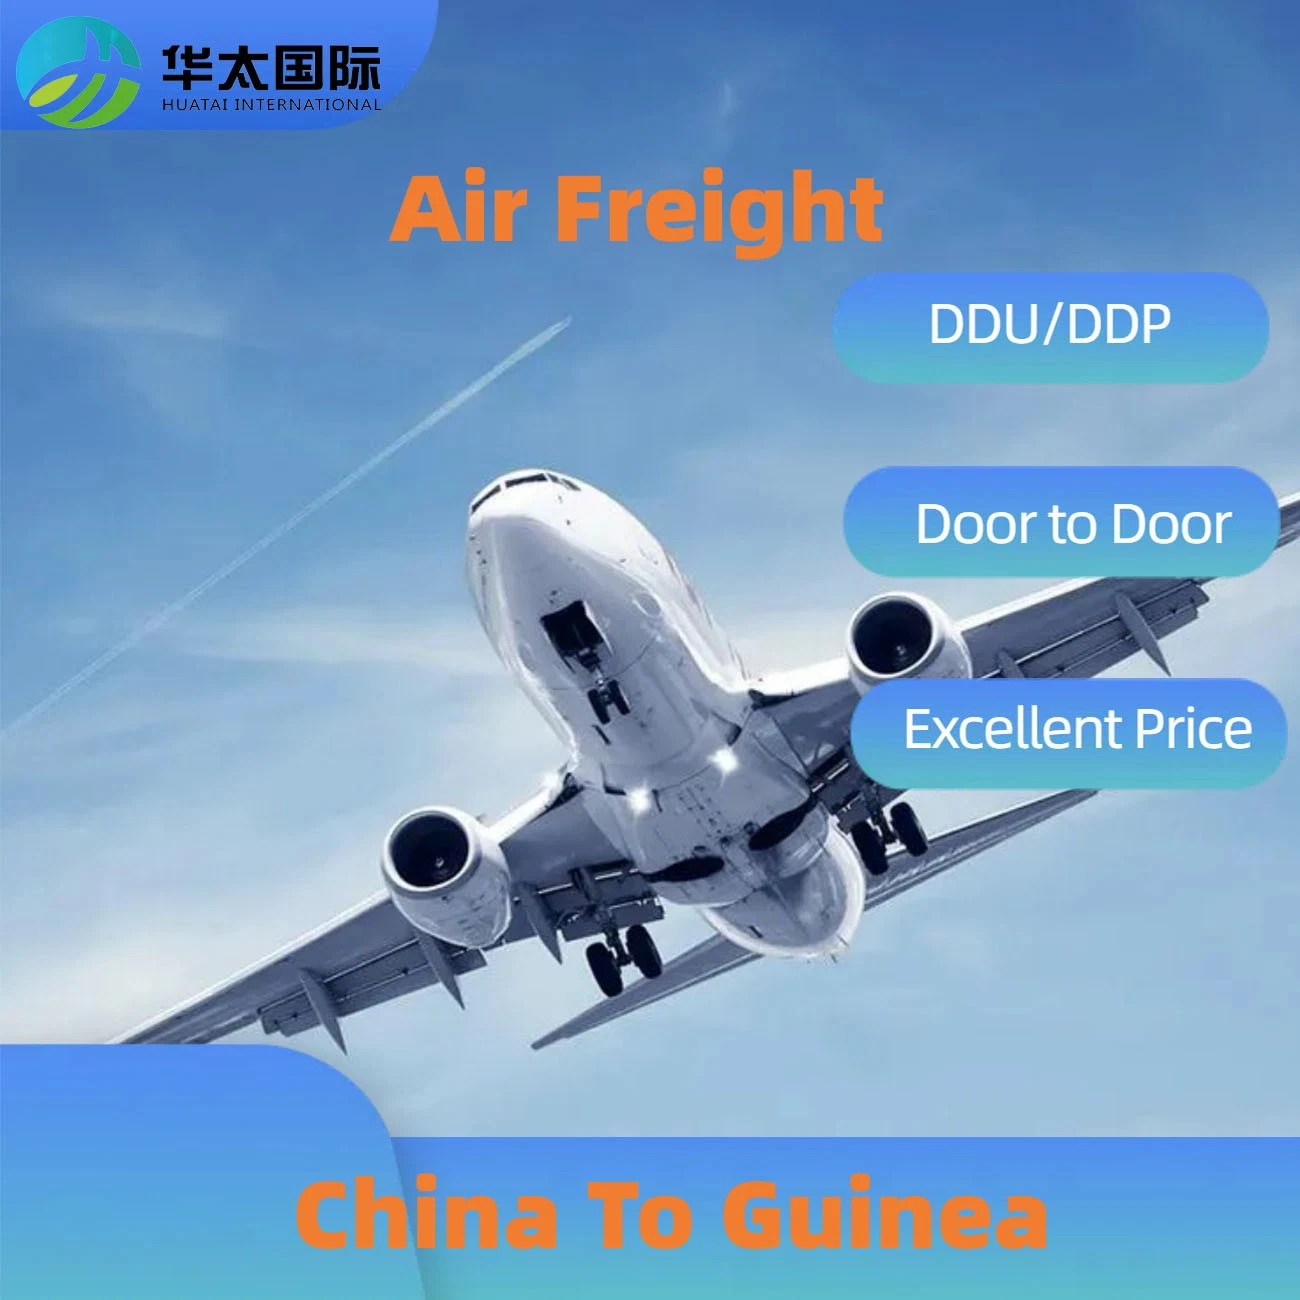 من الصين إلى غينيا الشحن الجوي للشحن الجوي الدولي للنقل والإمداد وكيل النقل